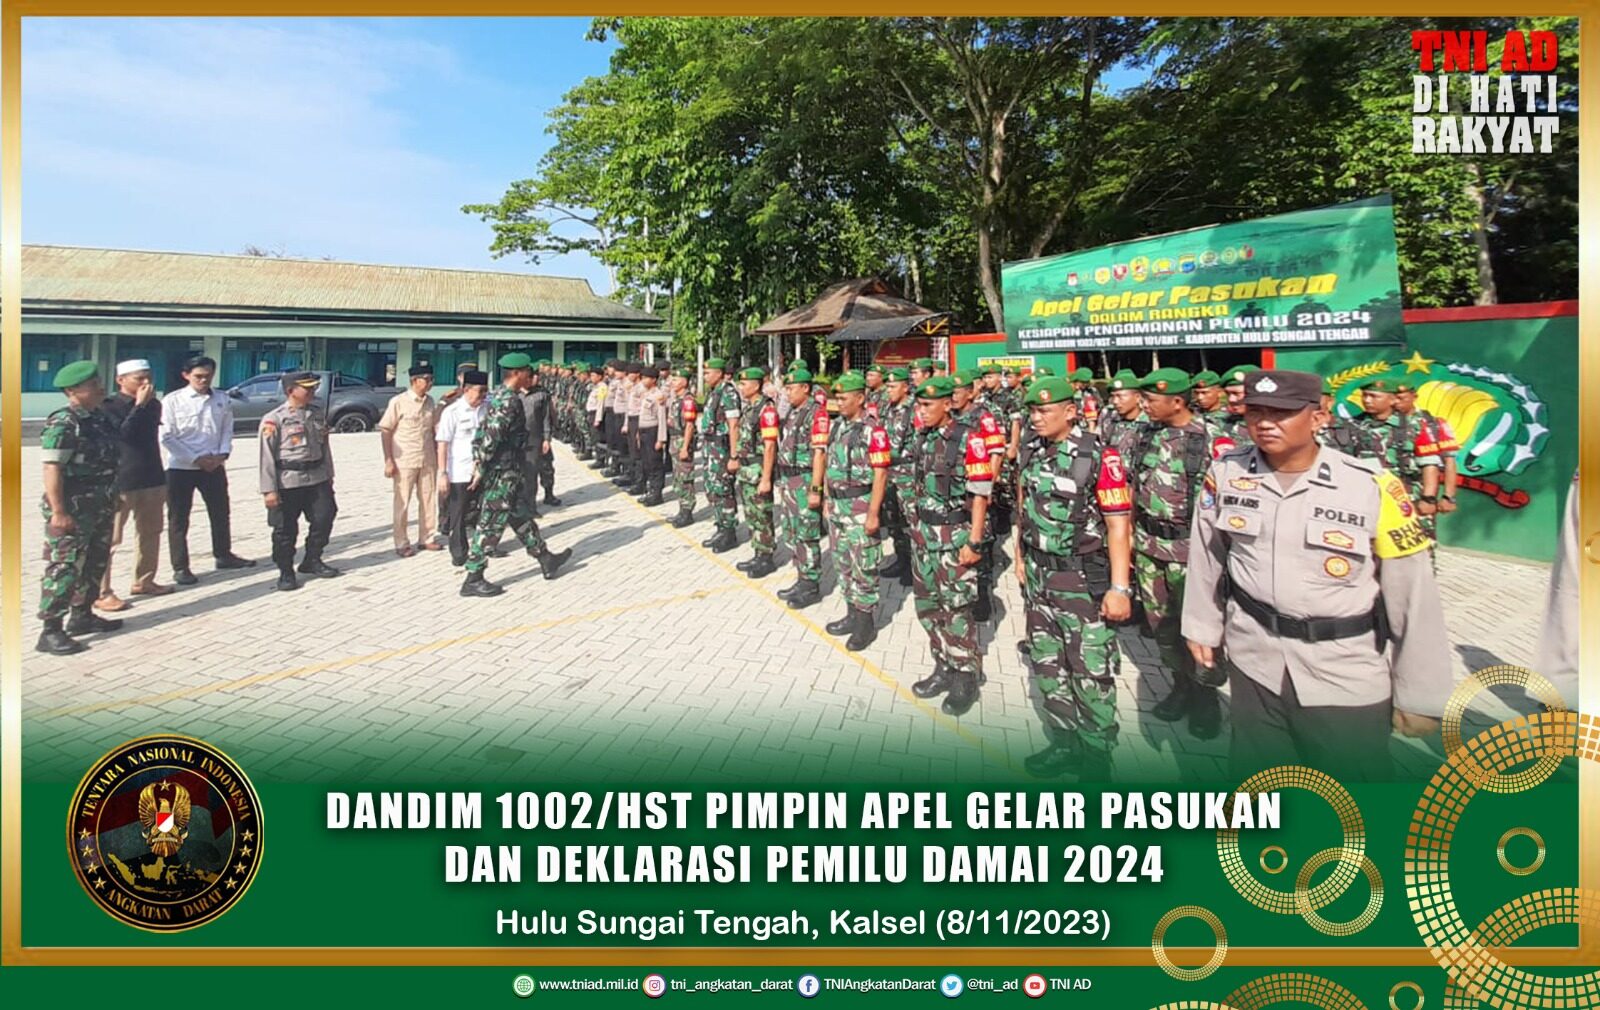 Dandim 1002/HST Pimpin Apel Gelar Pasukan Dan Deklarasi Pemilu Damai 2024